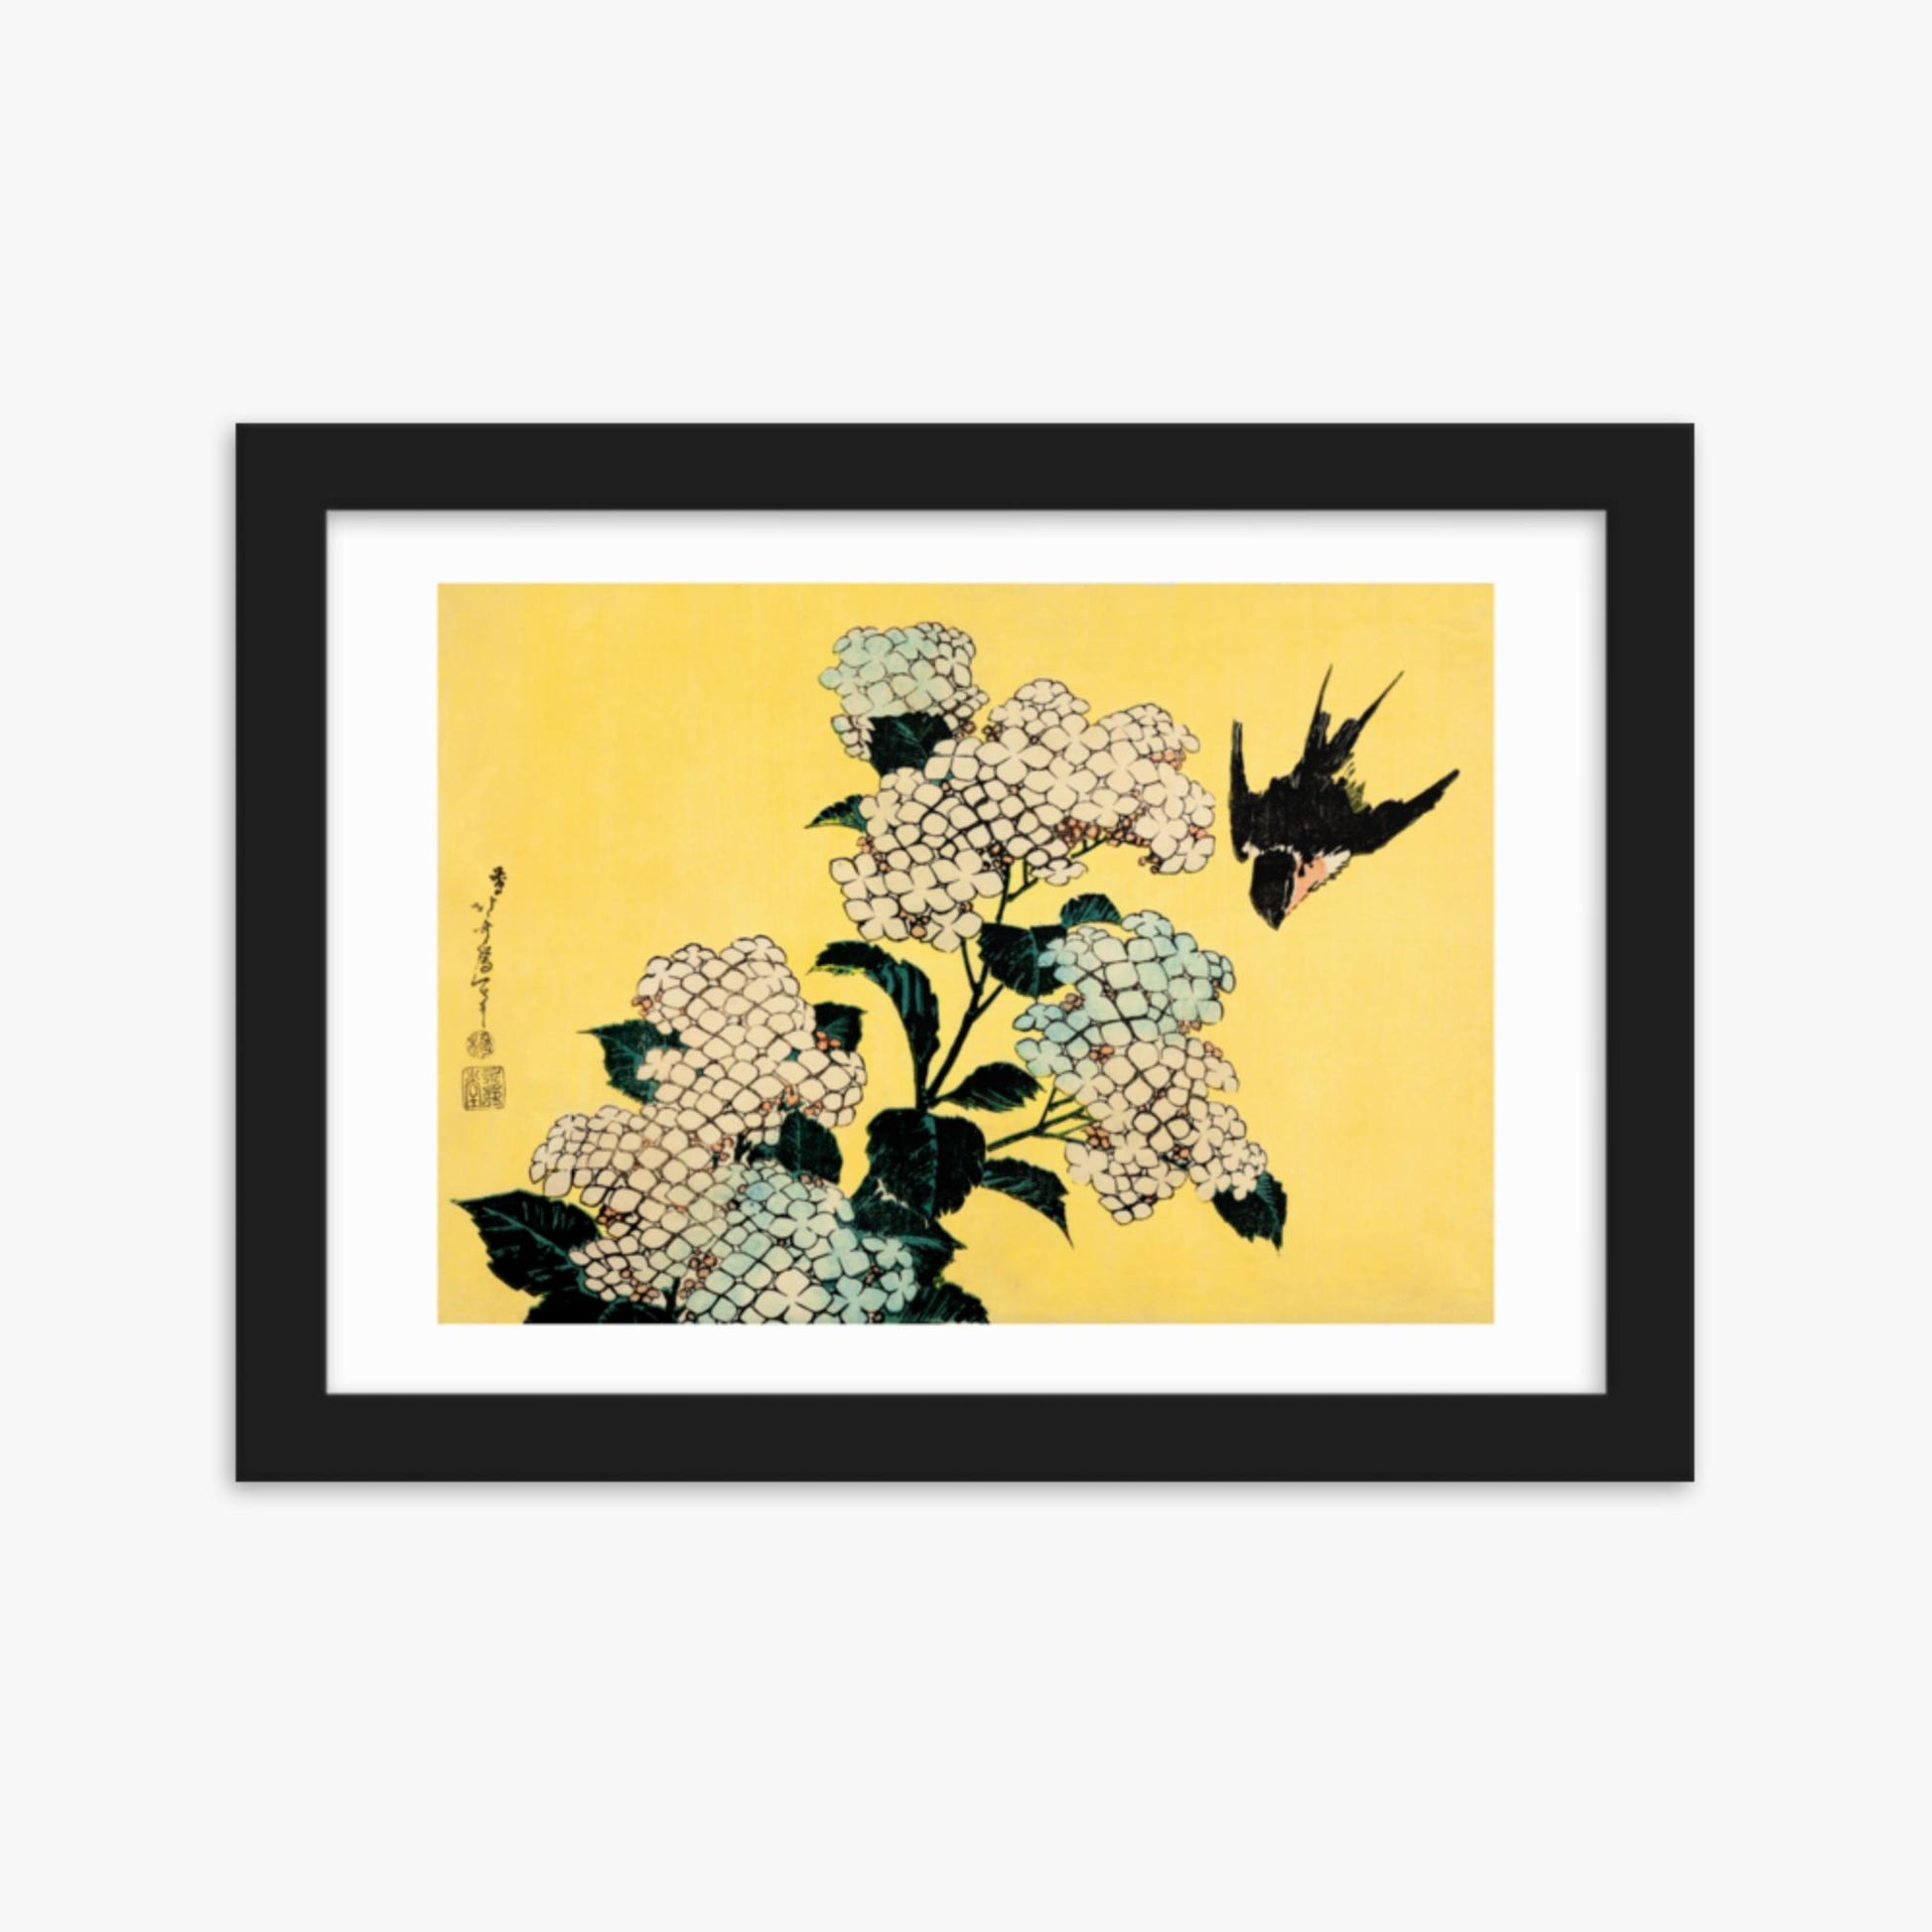 Katsushika Hokusai - Hydrangea and Swallow 21x30 cm Poster With Black Frame